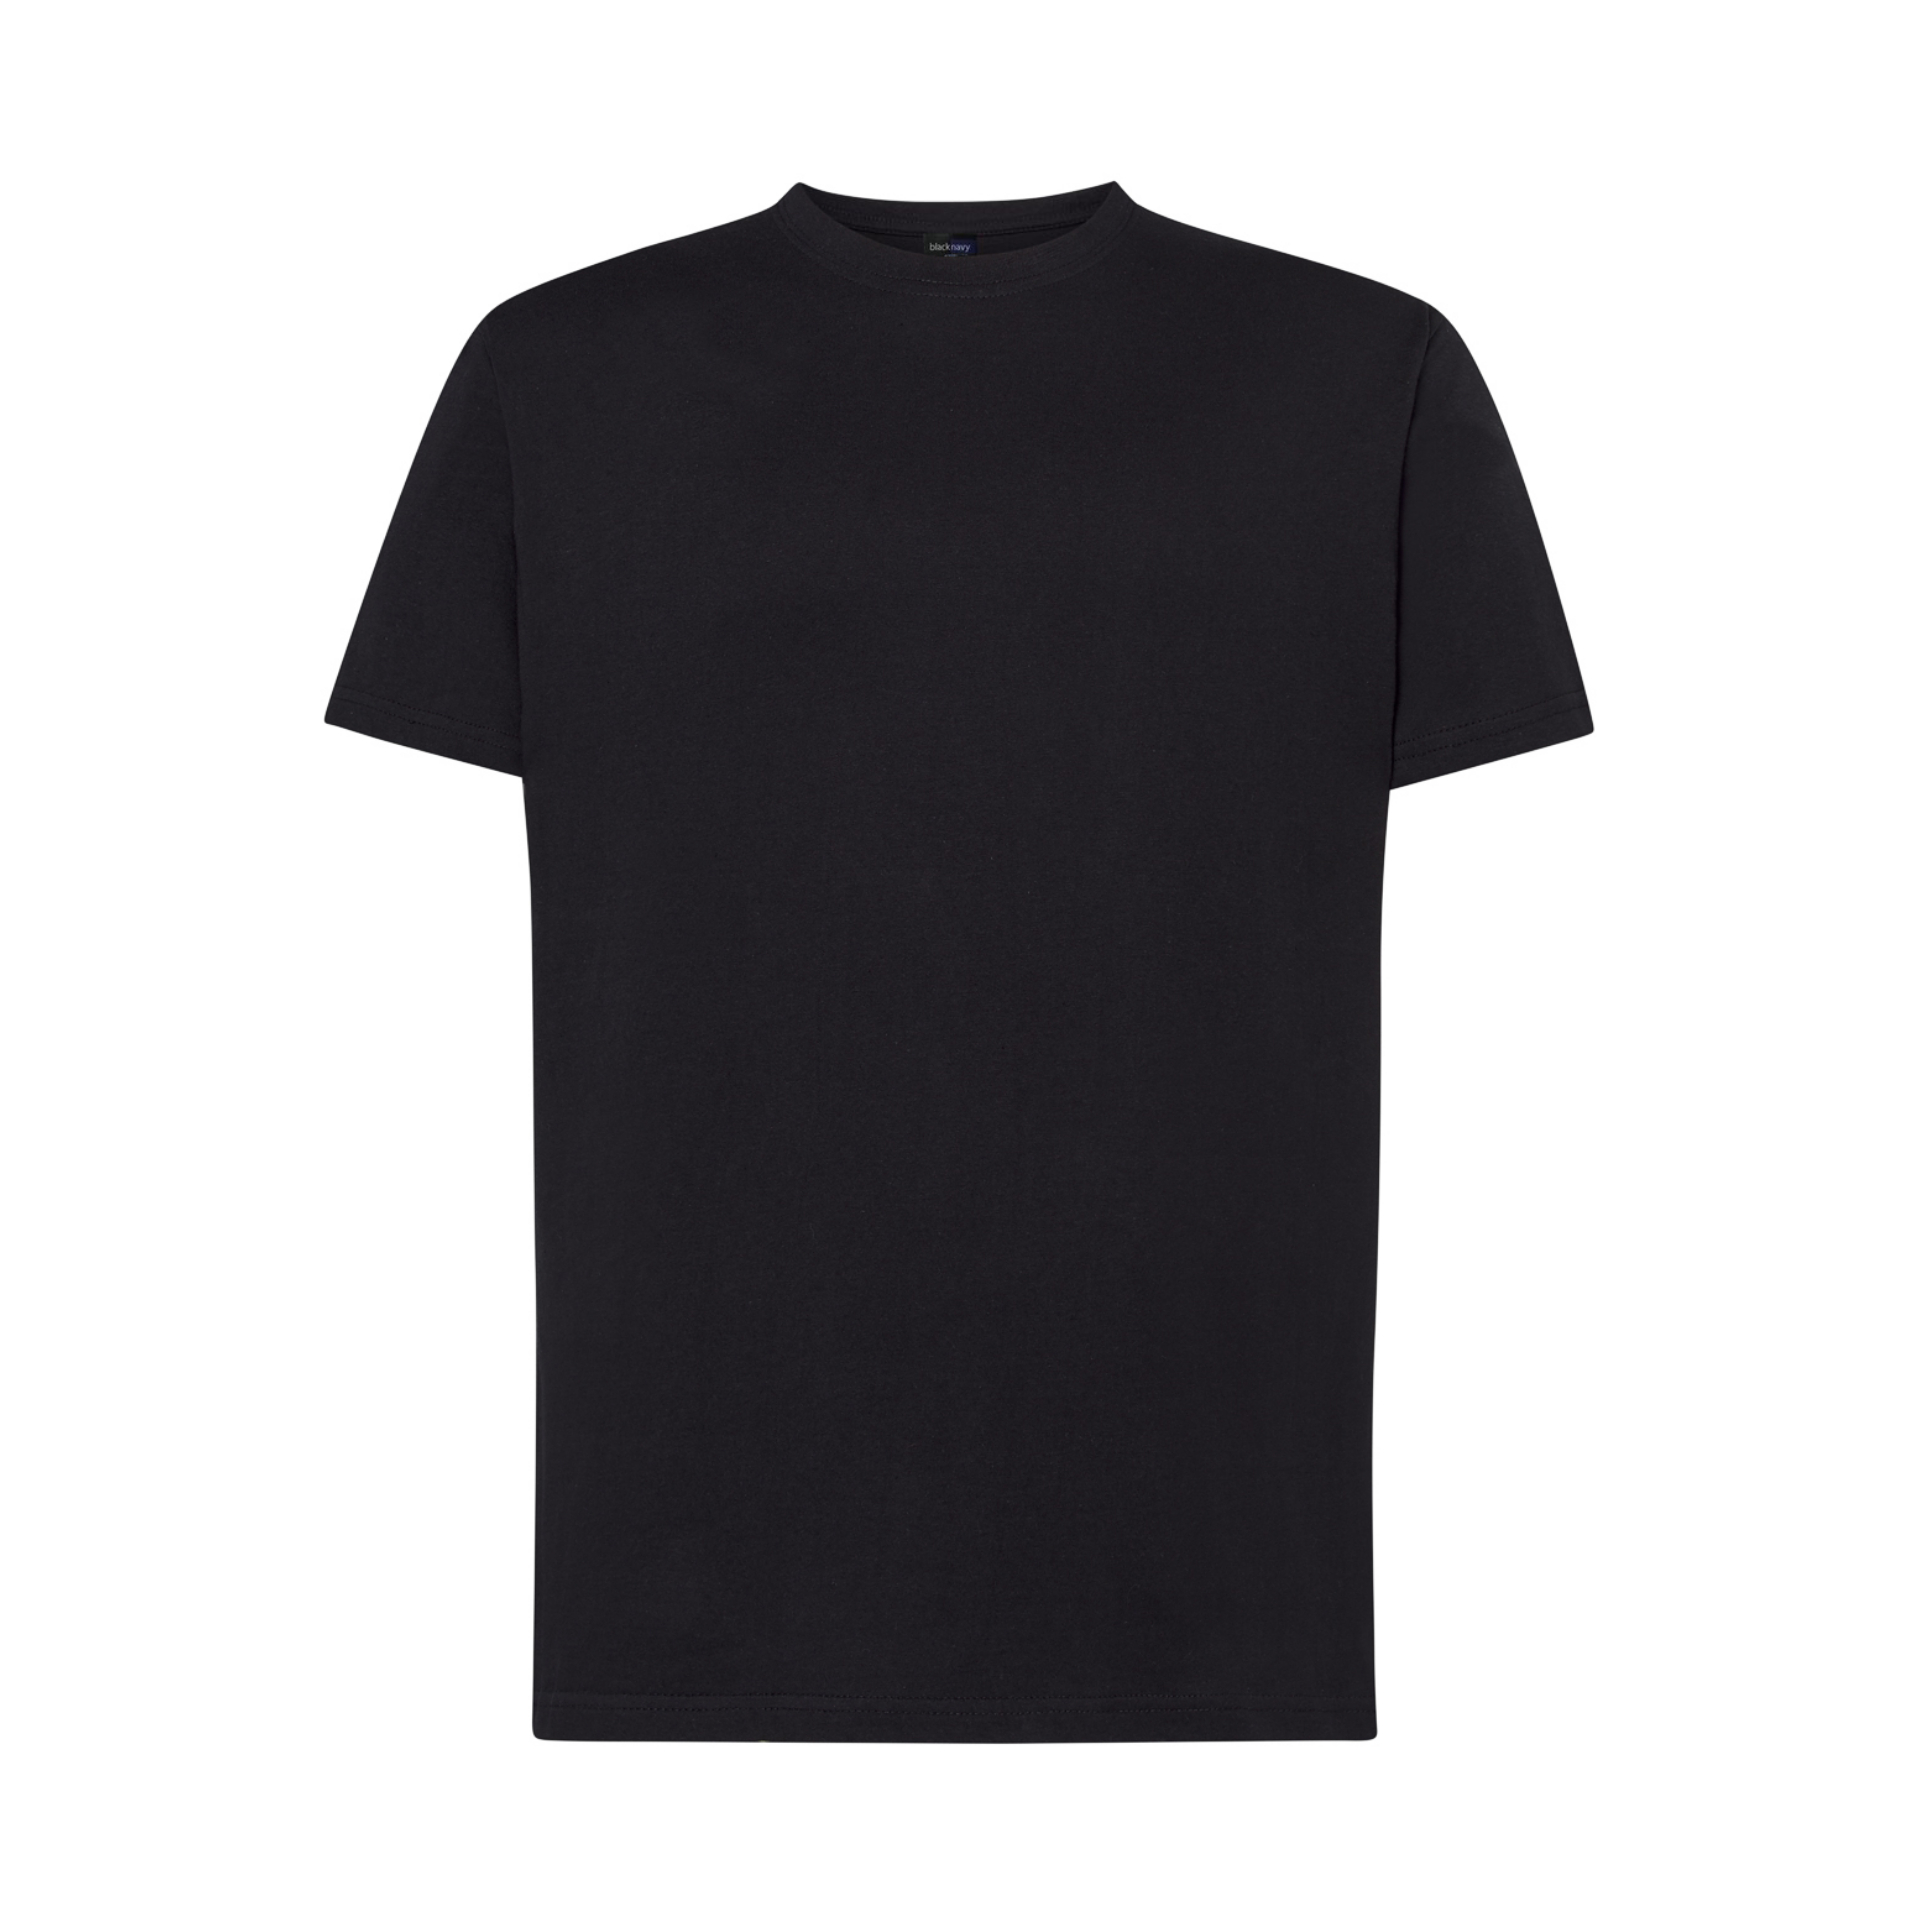 Black Basic Half Sleeve T-Shirt | BlackNavy